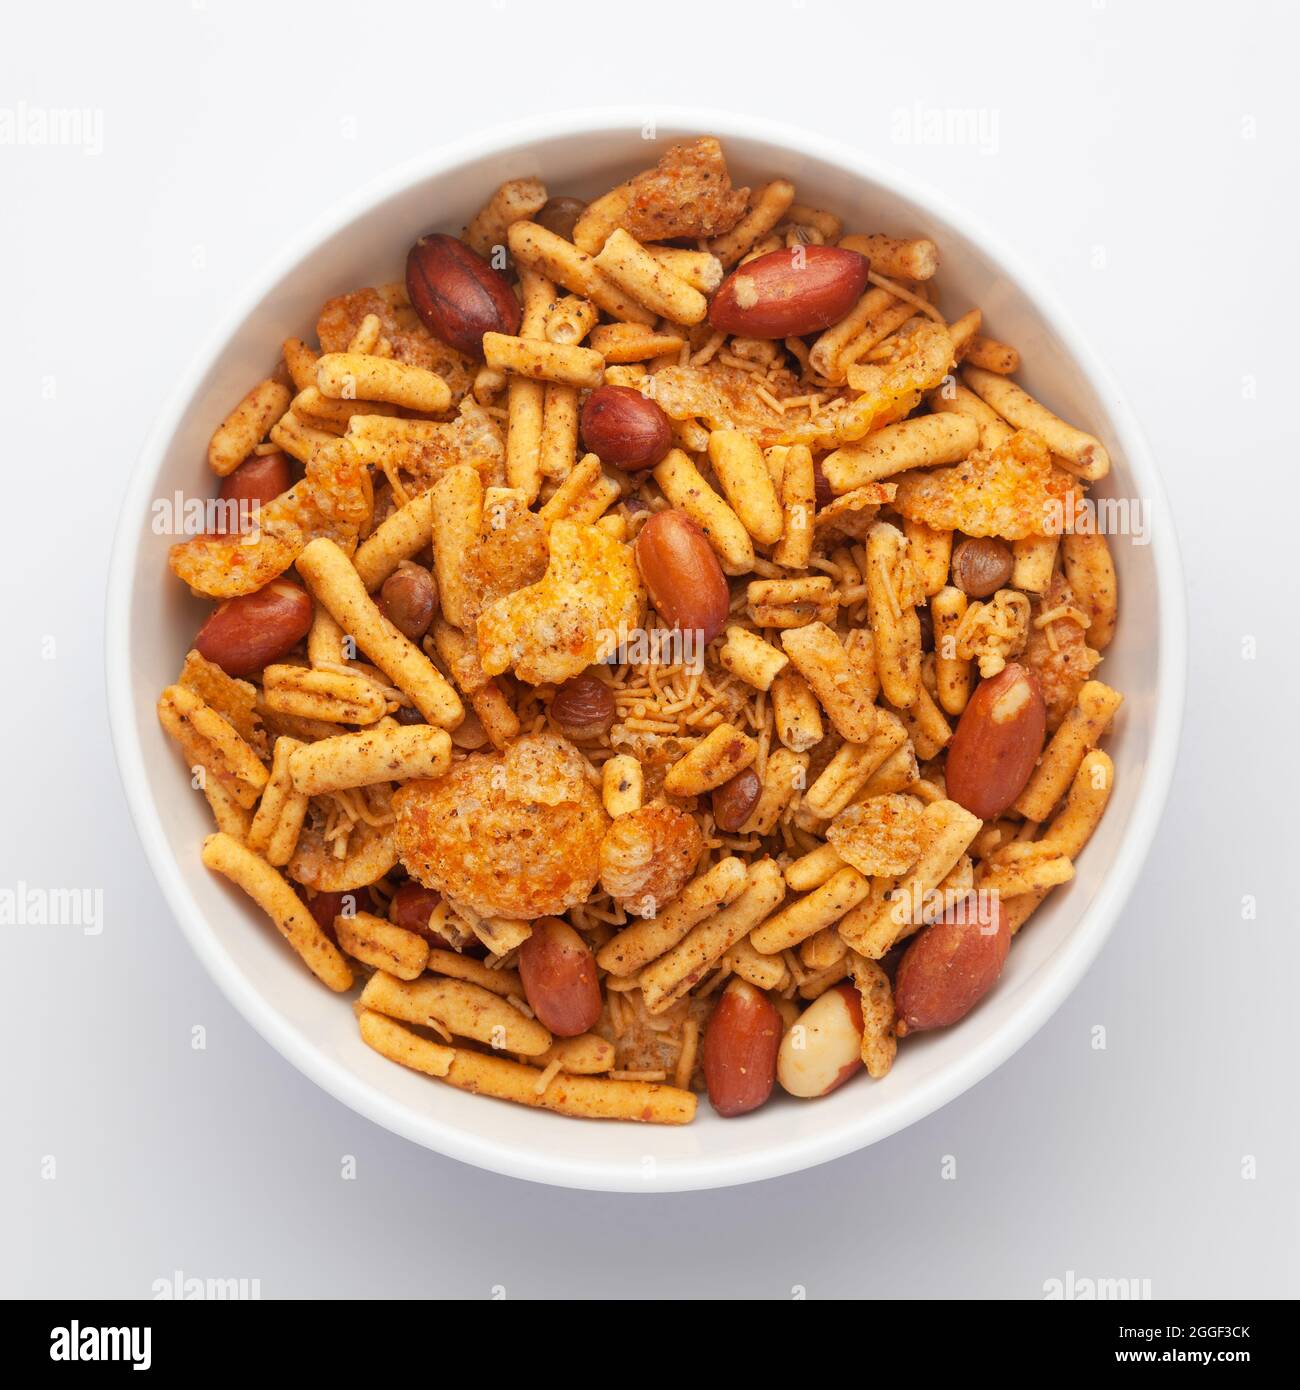 Nahaufnahme einer würzigen Chatpata-Mischung in einer weißen Keramikschale aus Erdnüssen und Cornflakes. Indische, würzige Snacks (Namkeen), Blick von oben Stockfoto